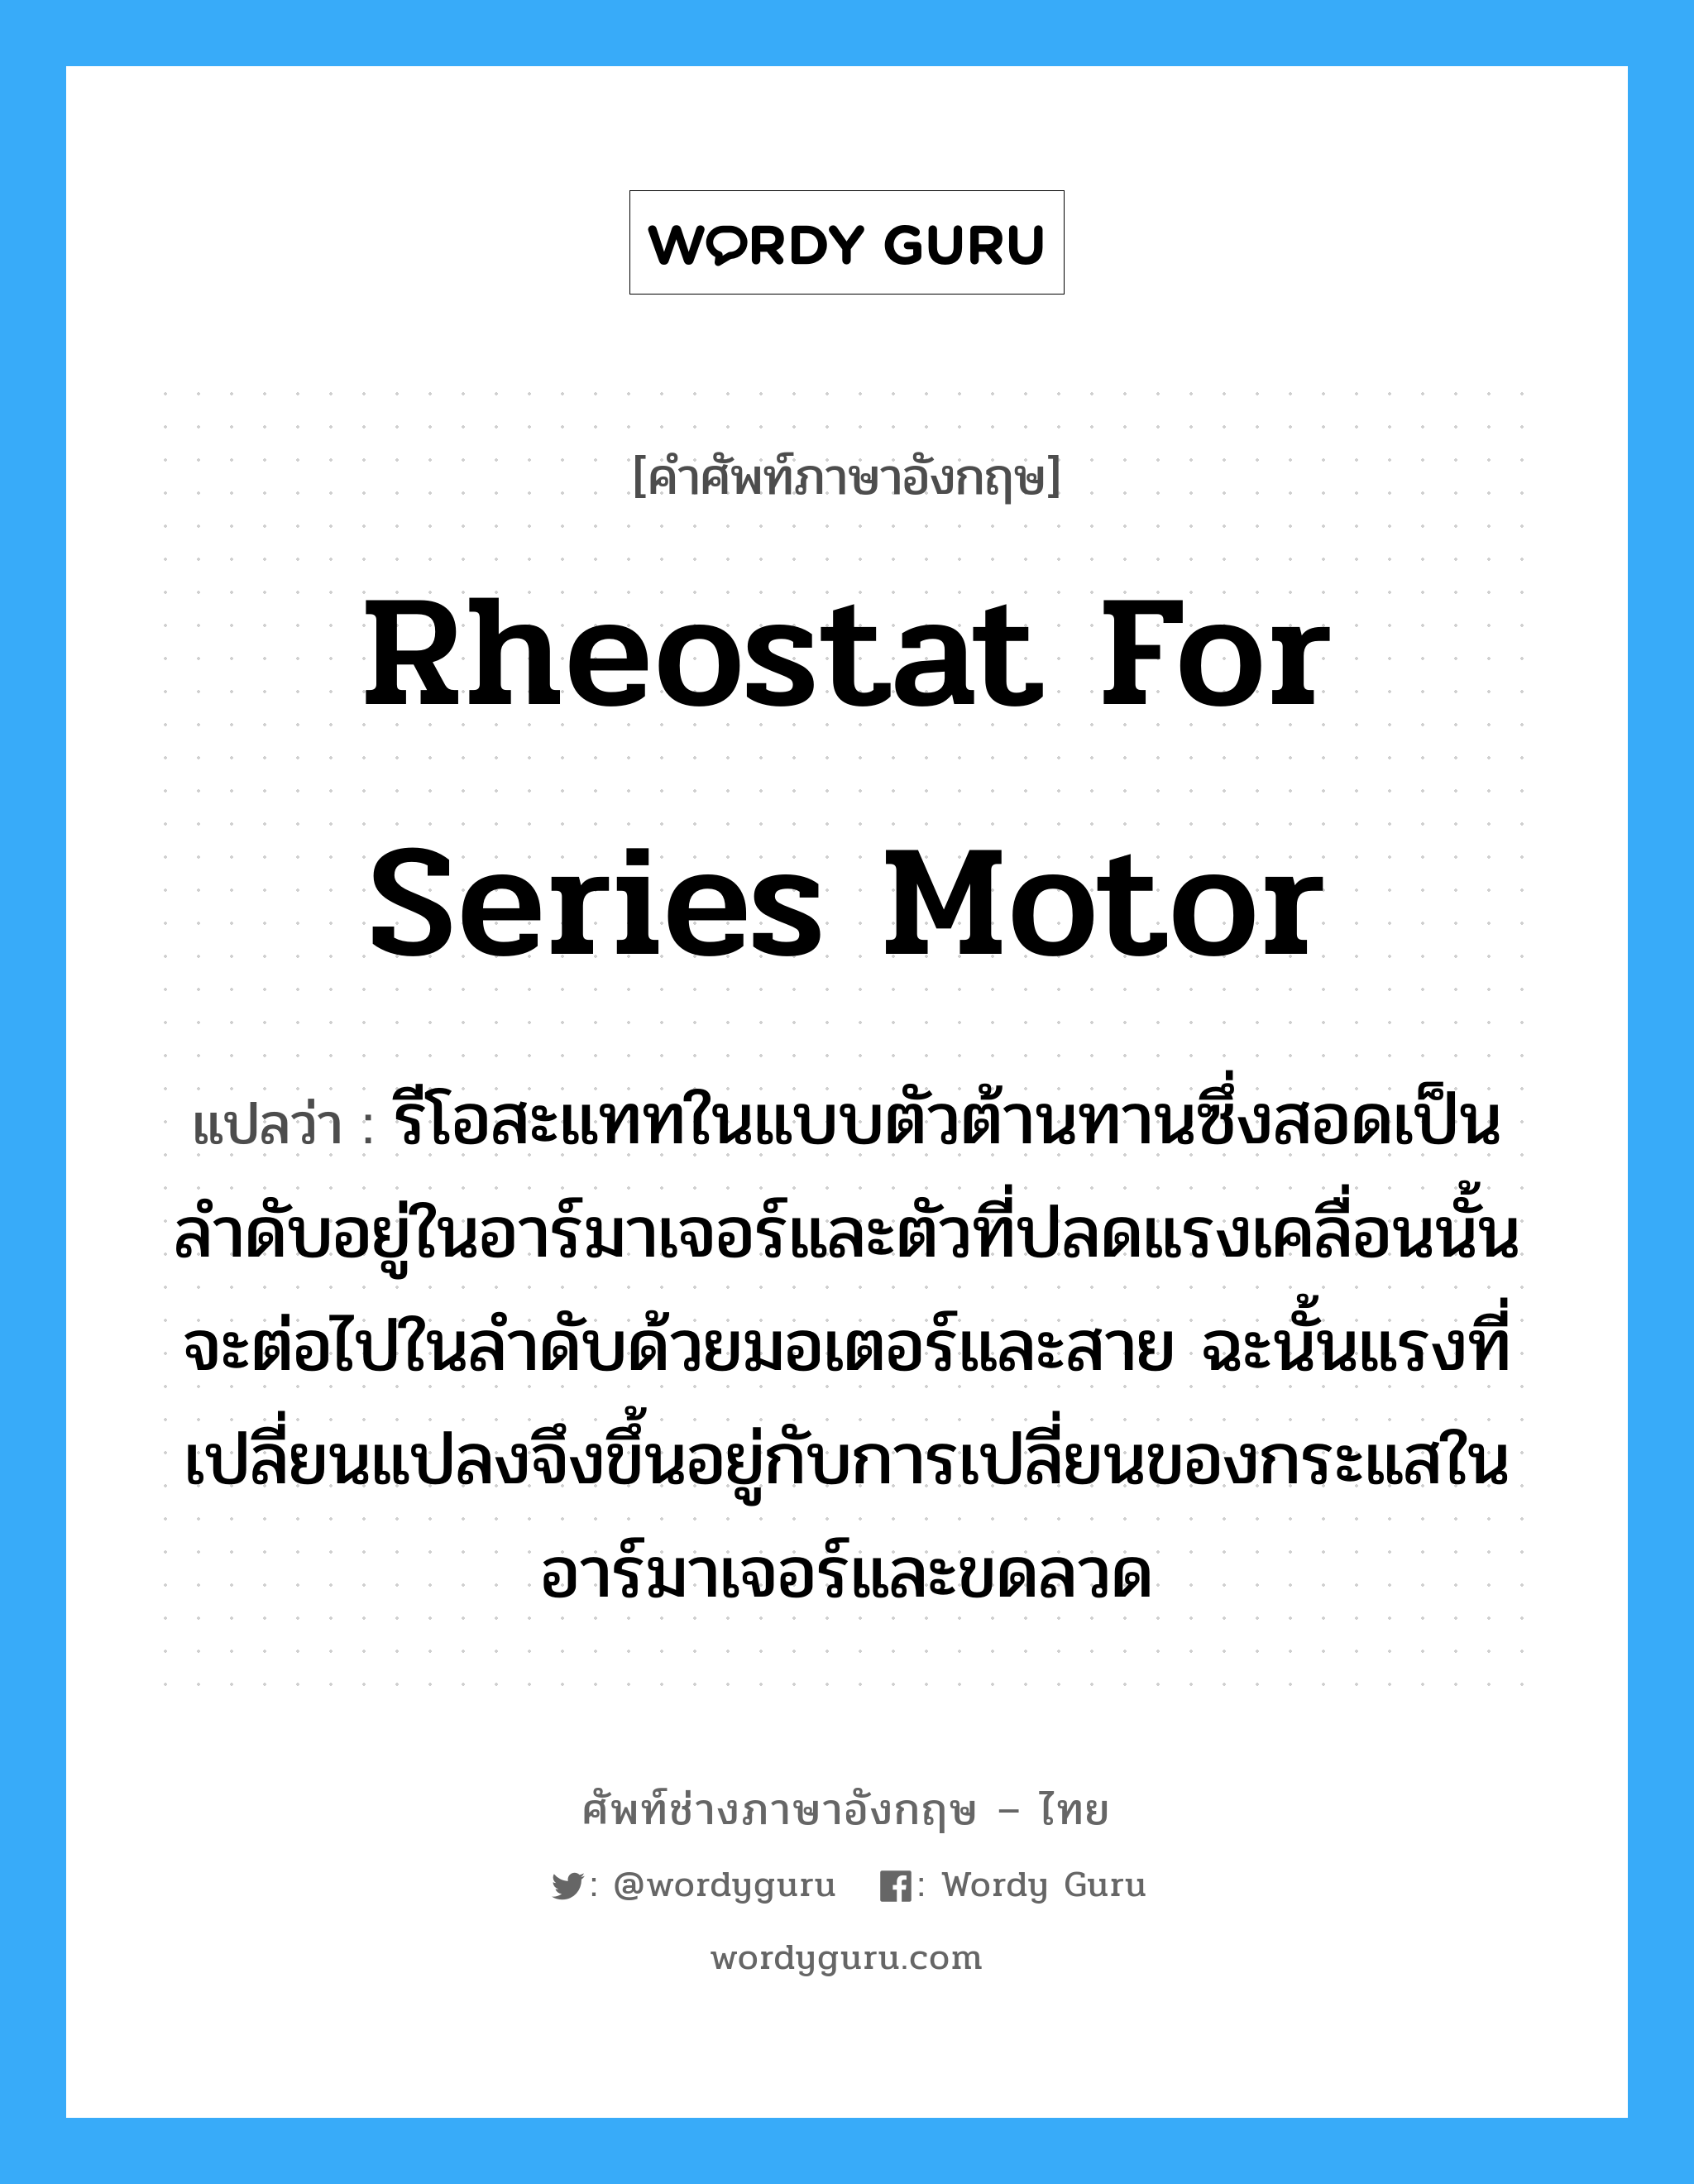 rheostat for series motor แปลว่า?, คำศัพท์ช่างภาษาอังกฤษ - ไทย rheostat for series motor คำศัพท์ภาษาอังกฤษ rheostat for series motor แปลว่า รีโอสะแททในแบบตัวต้านทานซึ่งสอดเป็นลำดับอยู่ในอาร์มาเจอร์และตัวที่ปลดแรงเคลื่อนนั้นจะต่อไปในลำดับด้วยมอเตอร์และสาย ฉะนั้นแรงที่เปลี่ยนแปลงจึงขึ้นอยู่กับการเปลี่ยนของกระแสในอาร์มาเจอร์และขดลวด